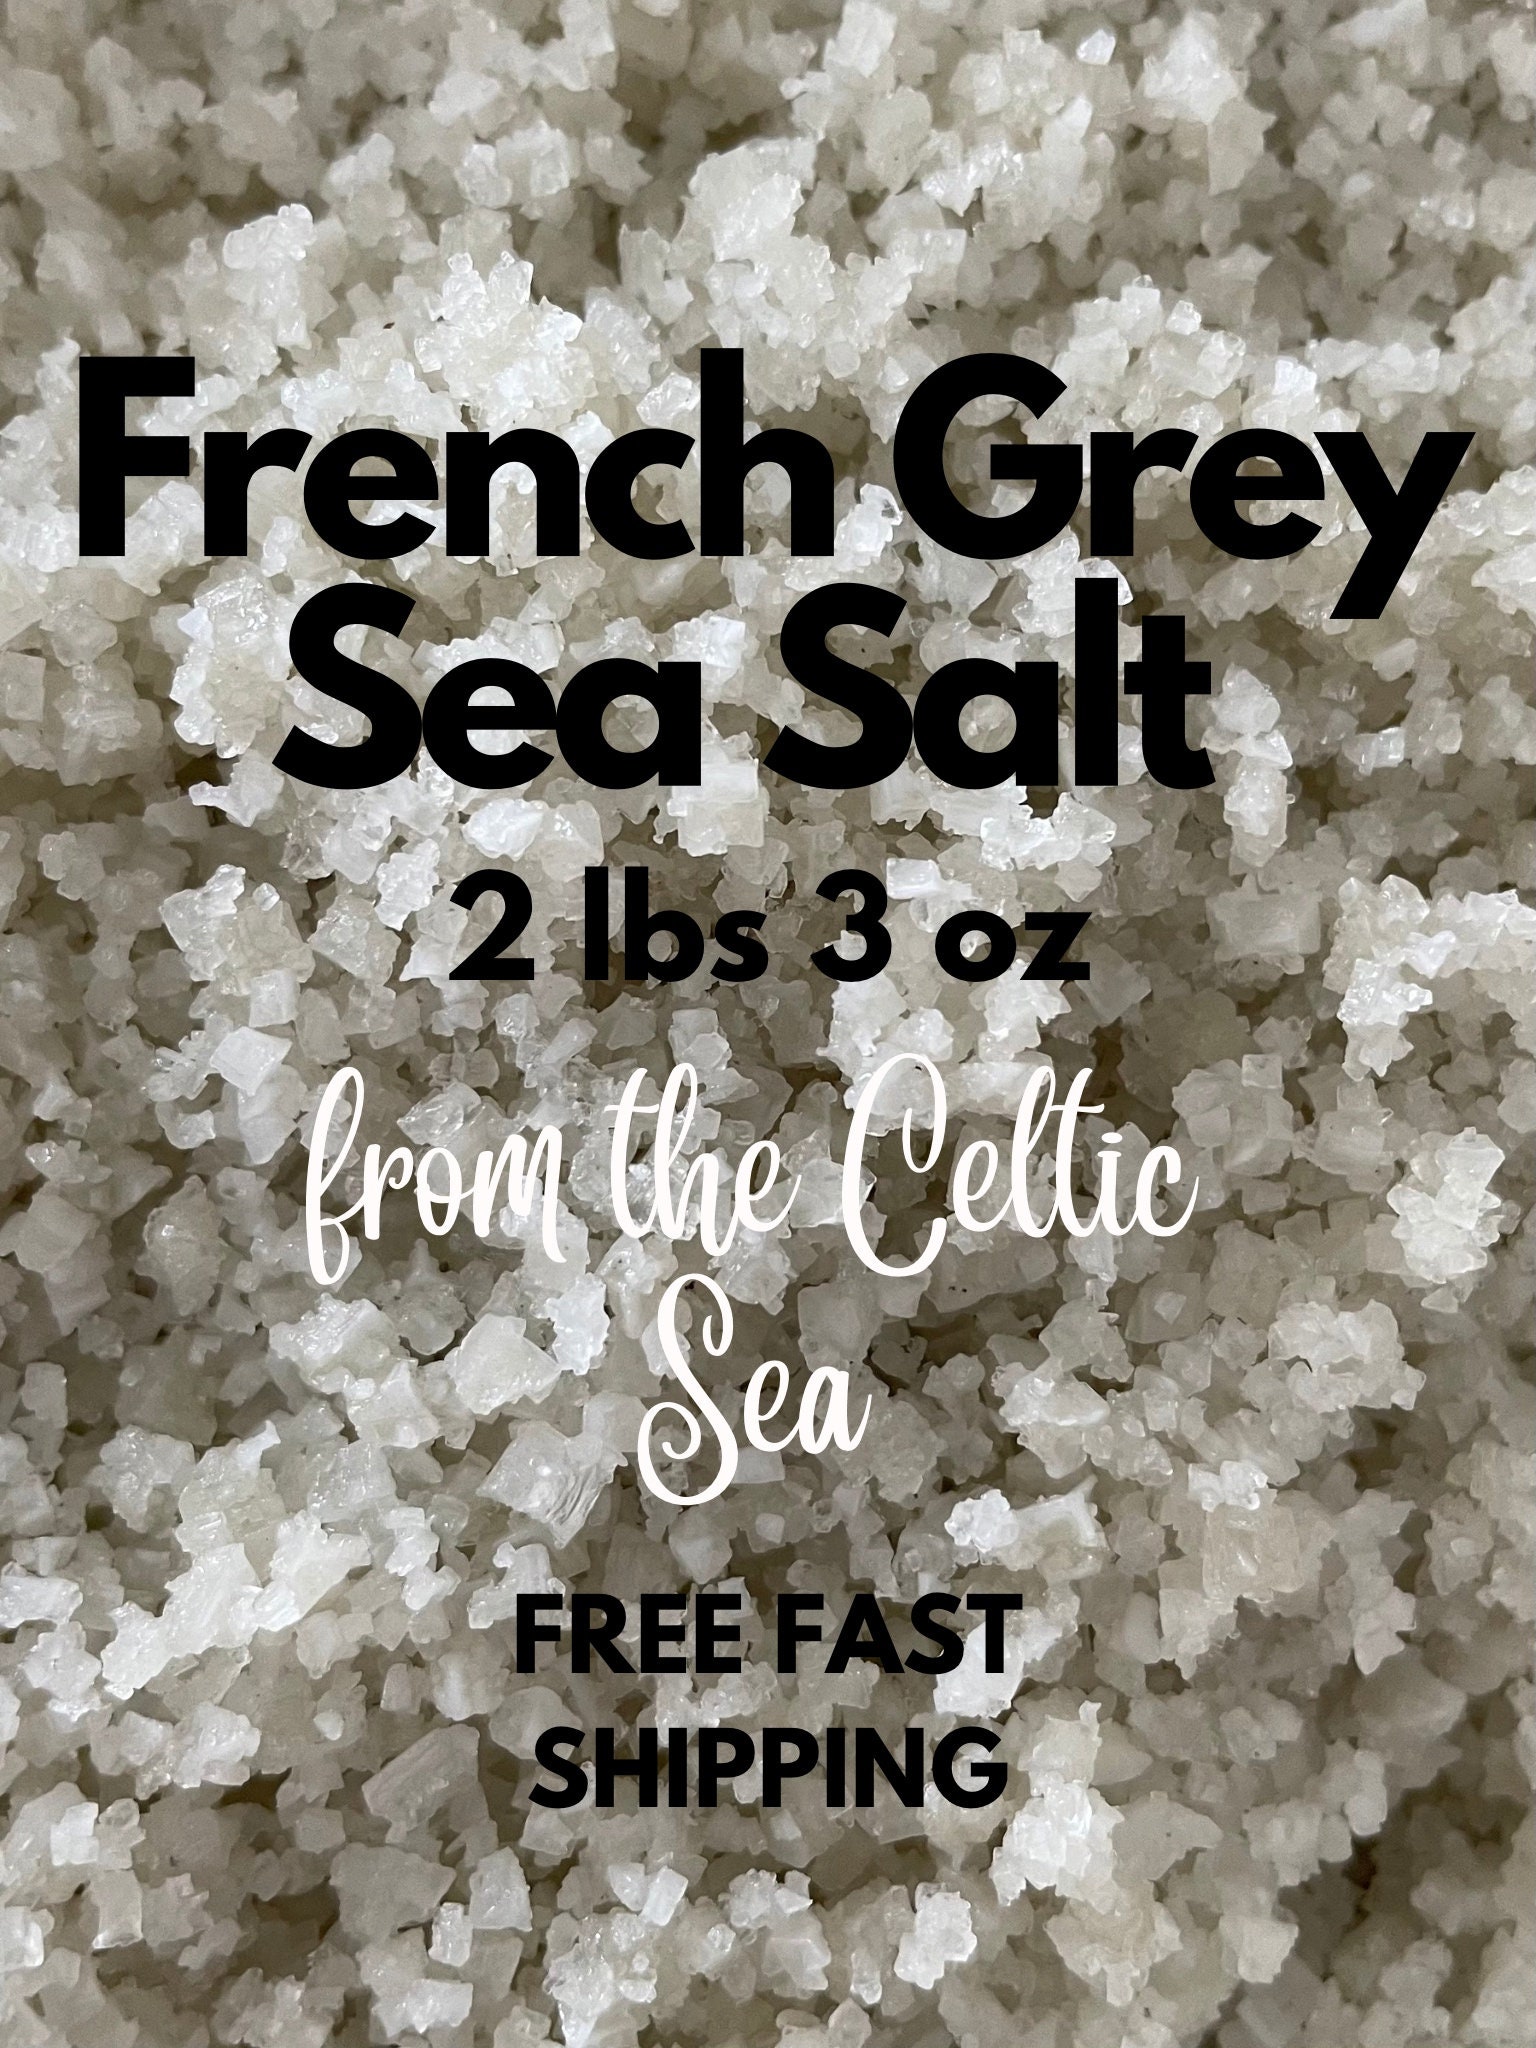 French Grey Sea Salt 1 Kg Bag 2 Lbs 3 Oz 